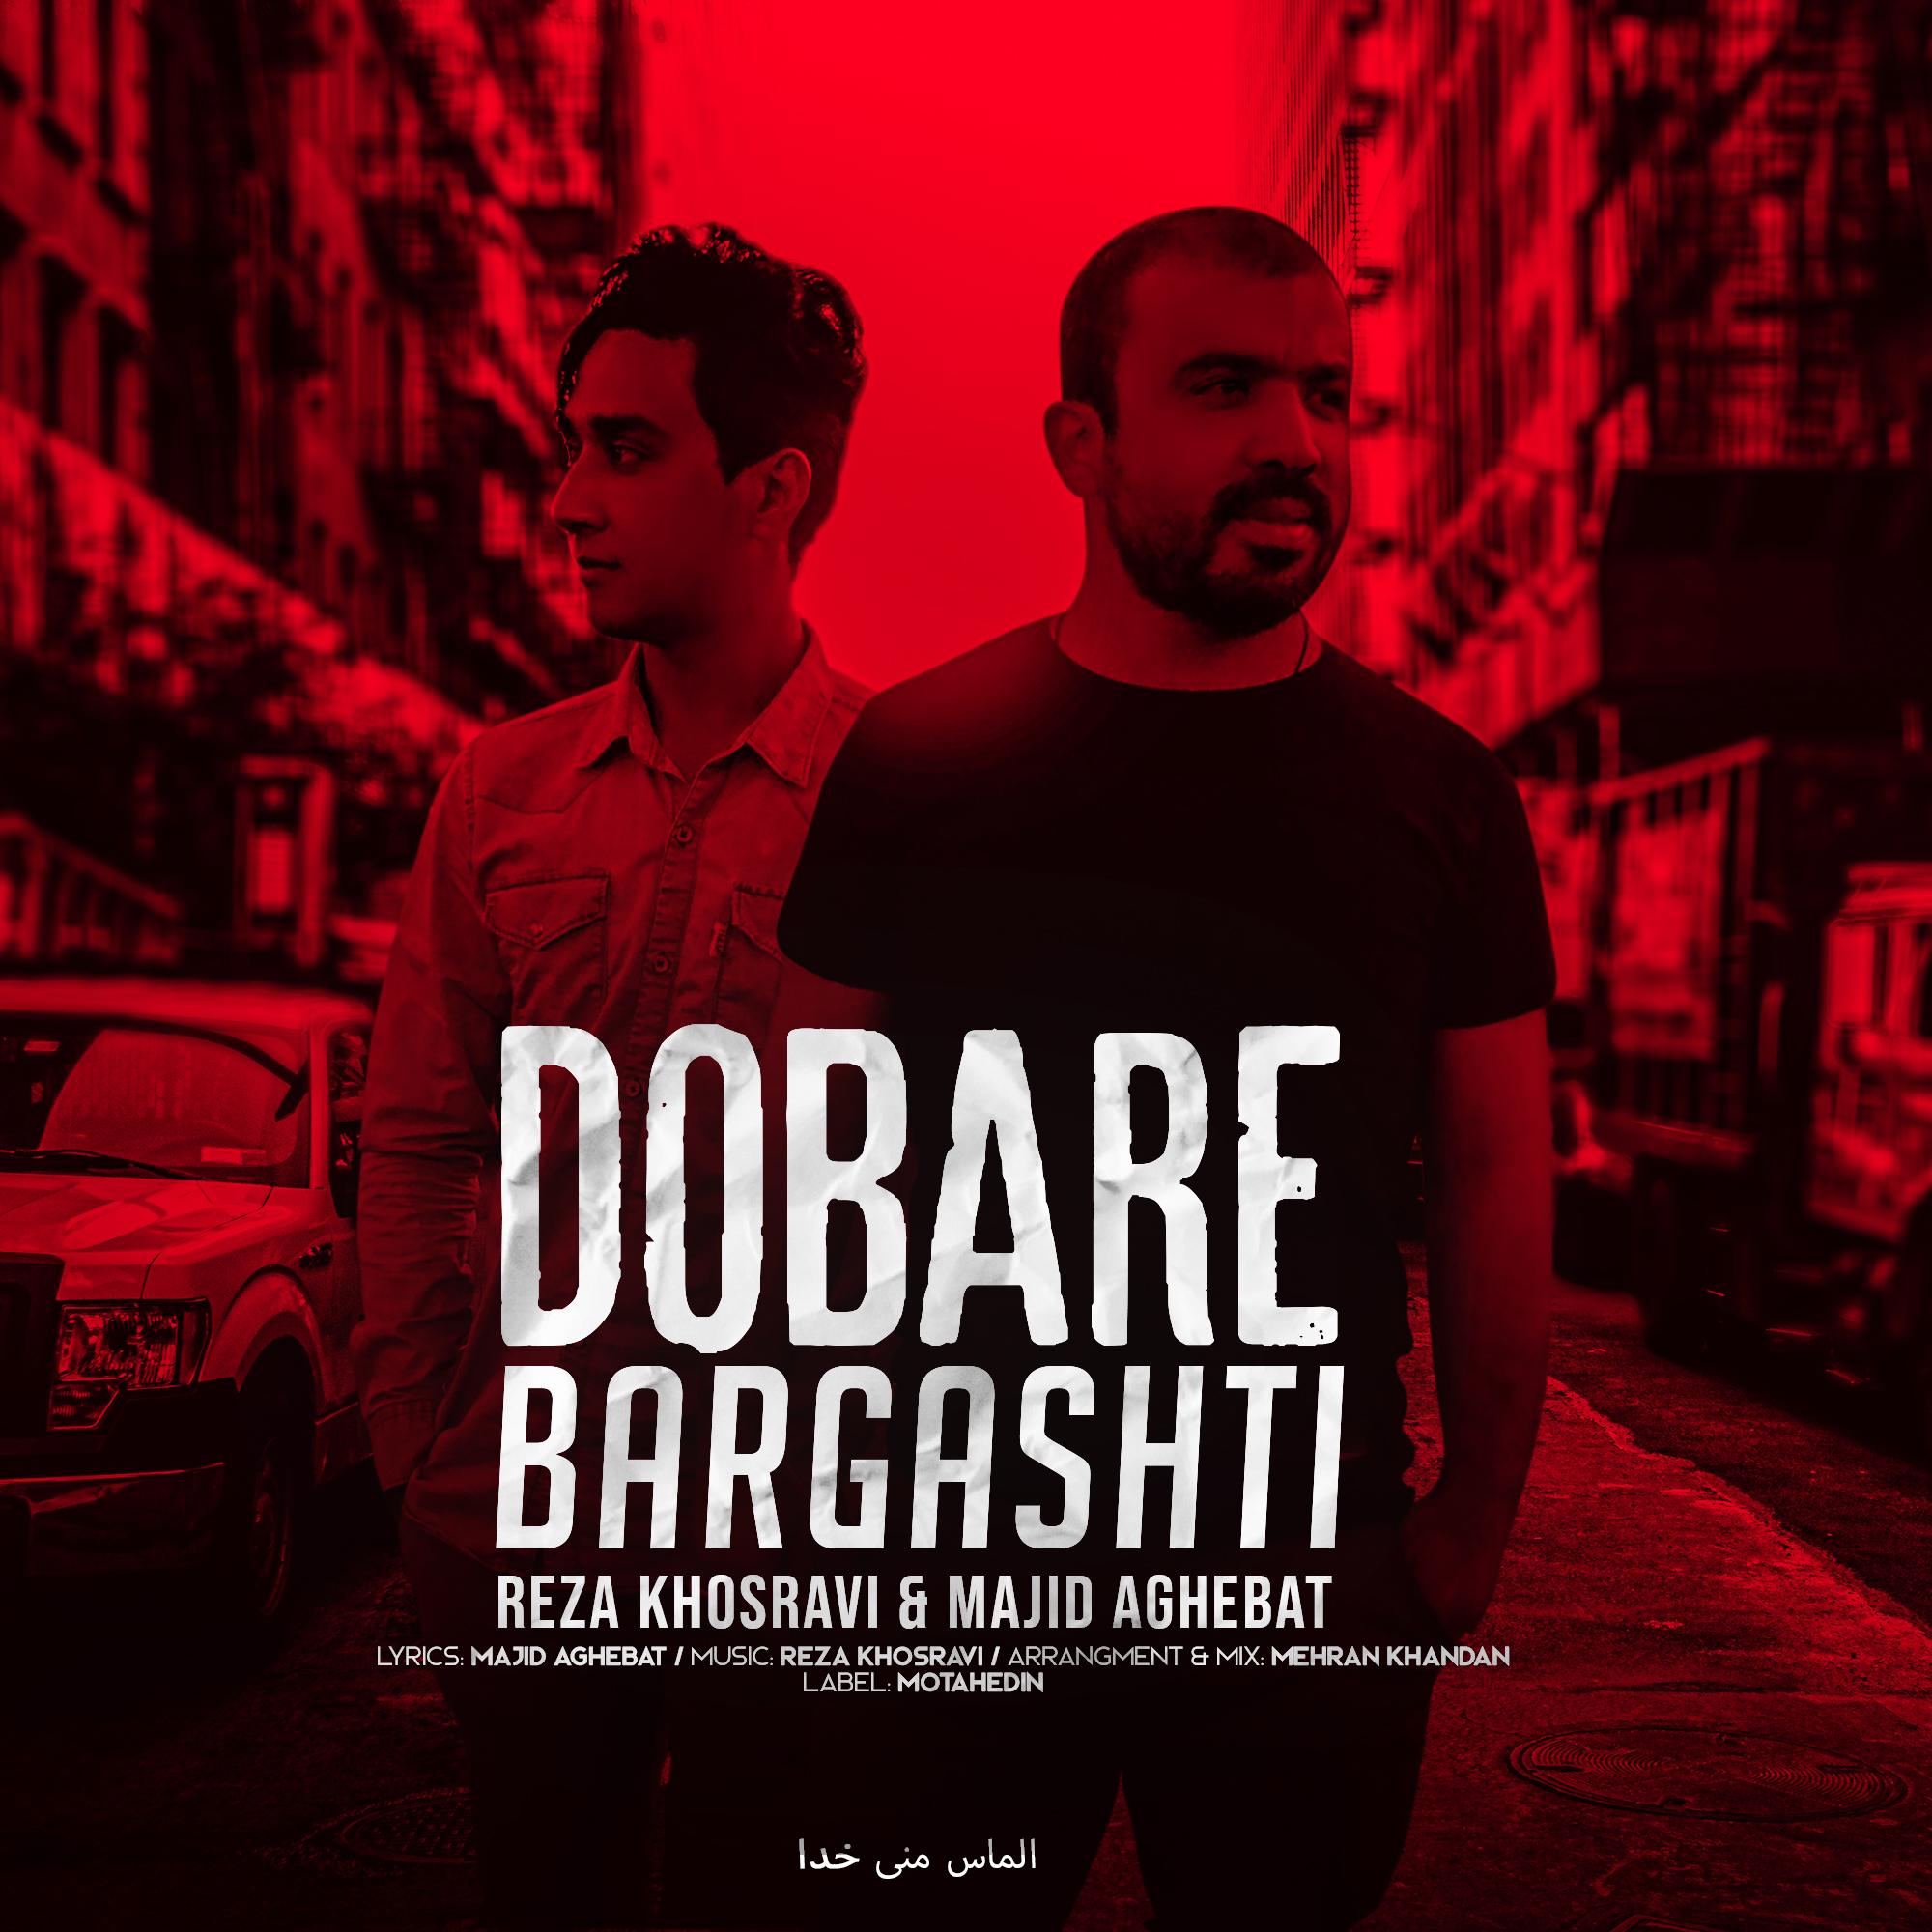  دانلود آهنگ جدید رضا خسروی  مجید عاقبت - دوباره برگشتی | Download New Music By Reza Khosravi & Majid Aghebat - Dobare Barghashti